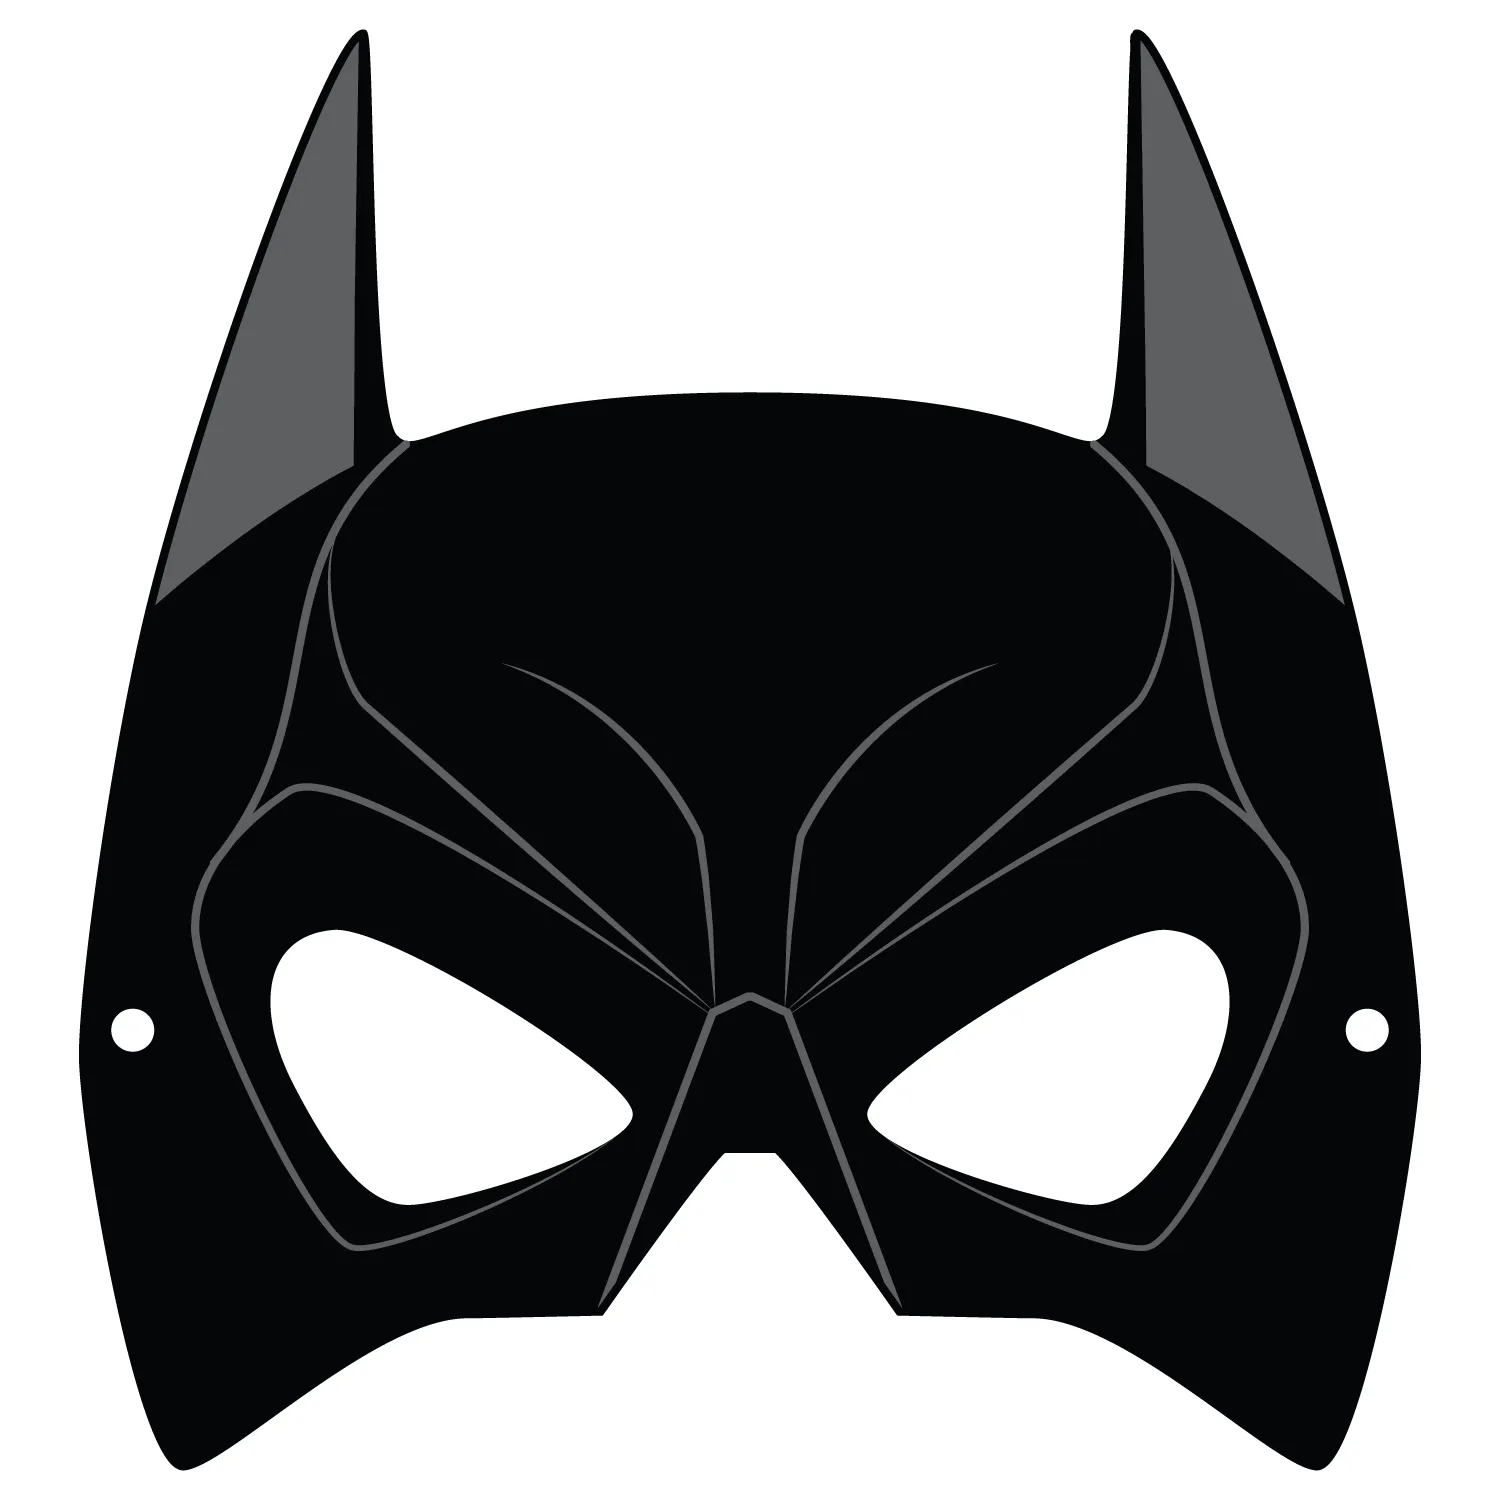 Plantilla de Máscara de Batman | Manualidades de papel para niños